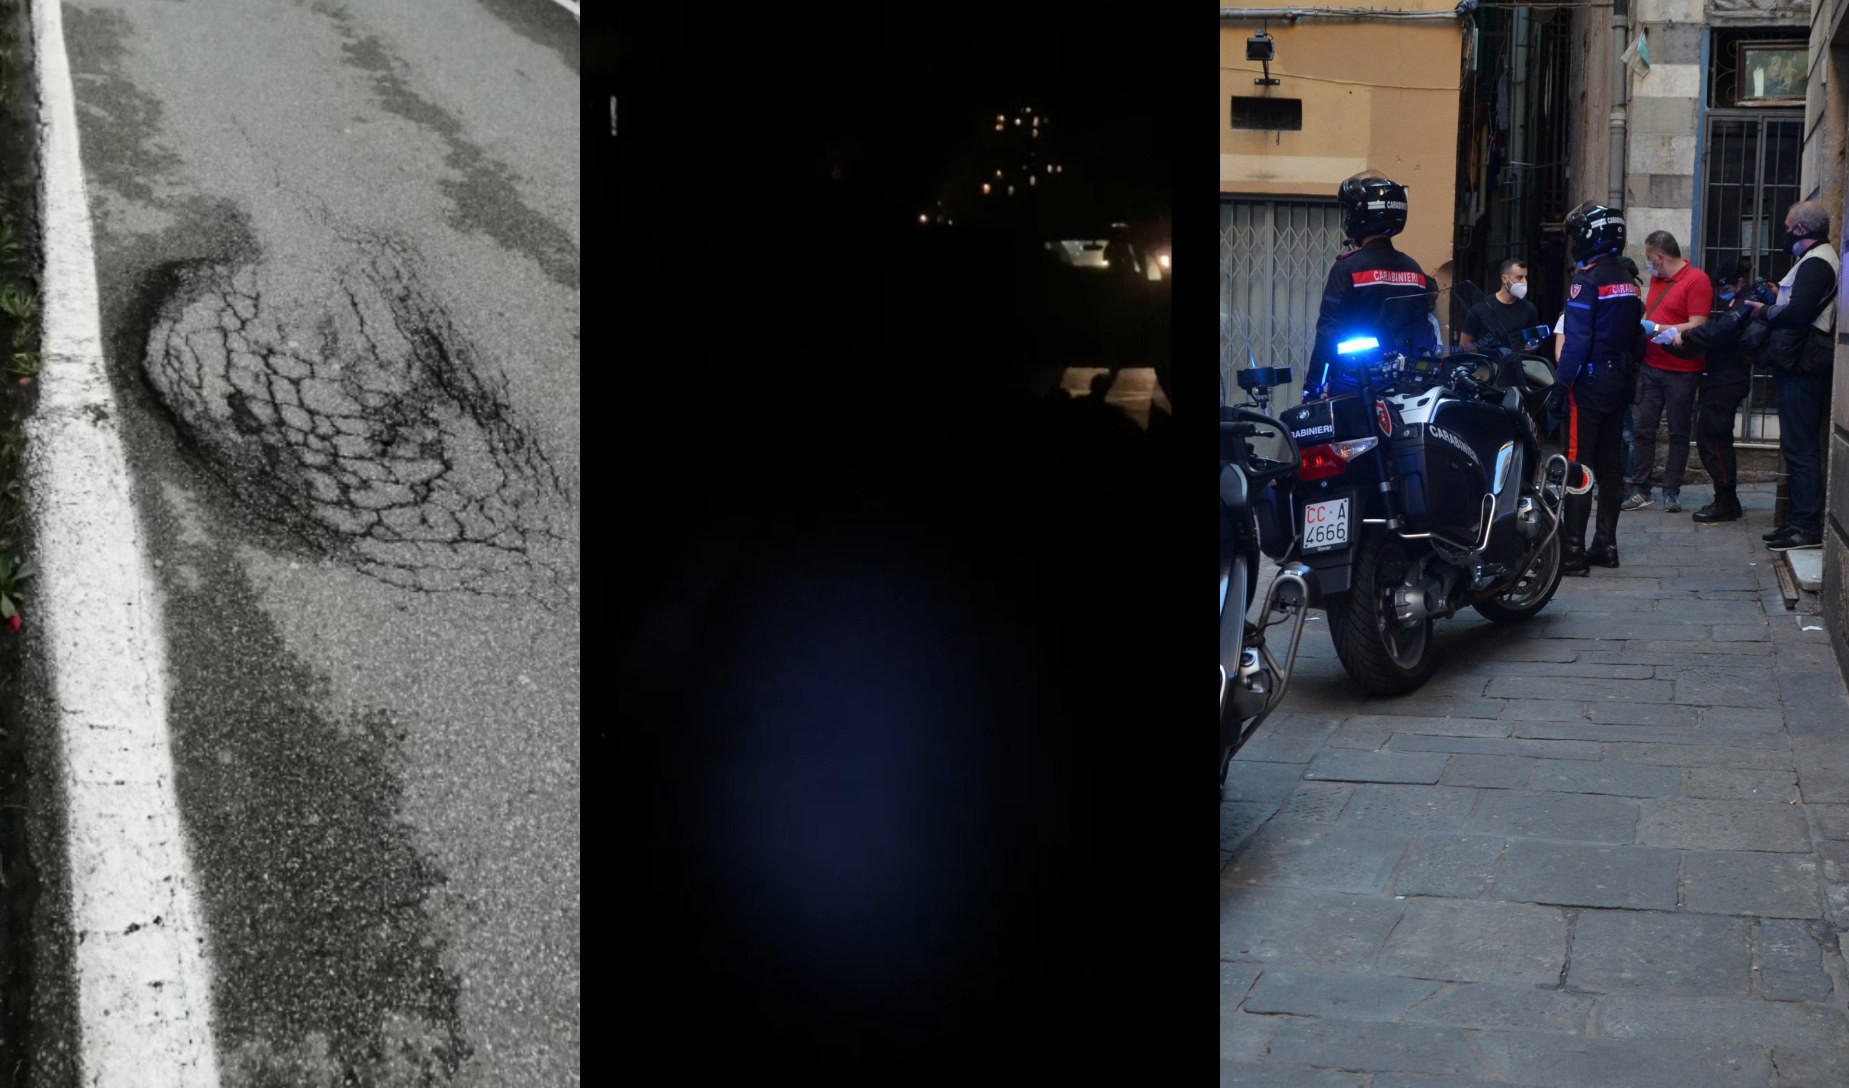 Sicurezza a Genova, tra lotta alla criminalità, multe, buche e scarsa illuminazione